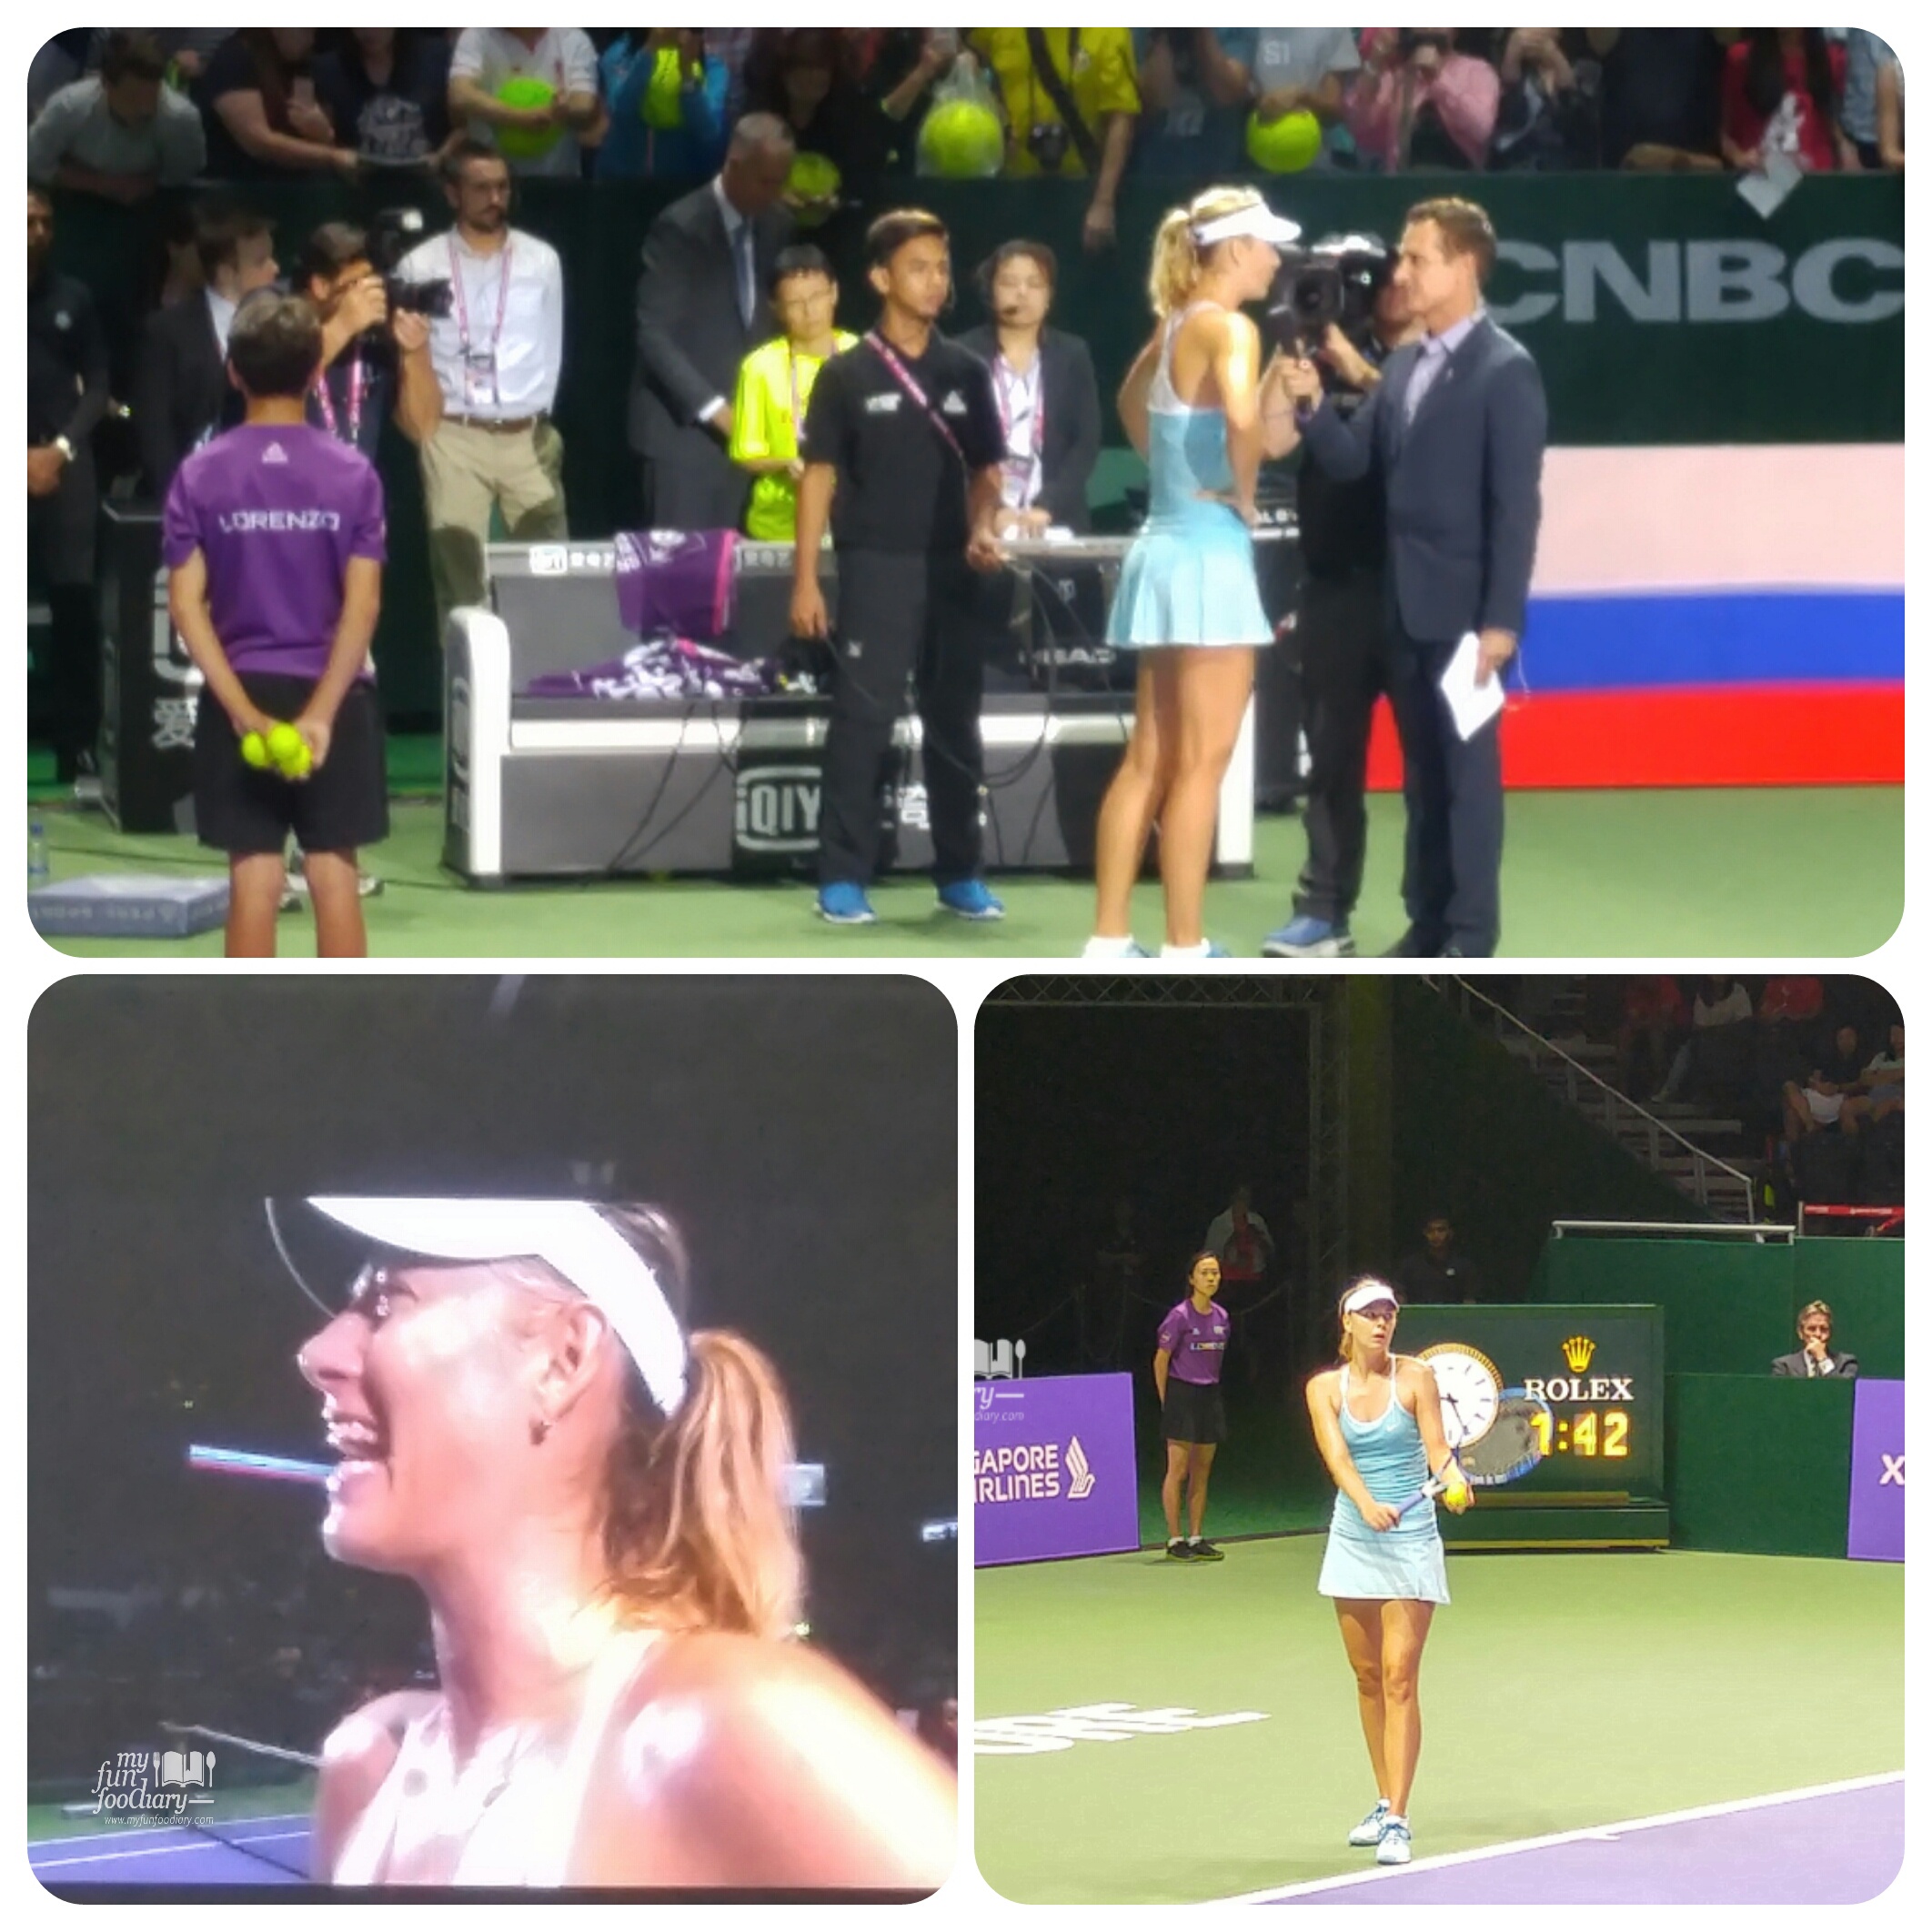 Maria Sharapova Won Against Agniezka Radwanska by Myfunfoodiary